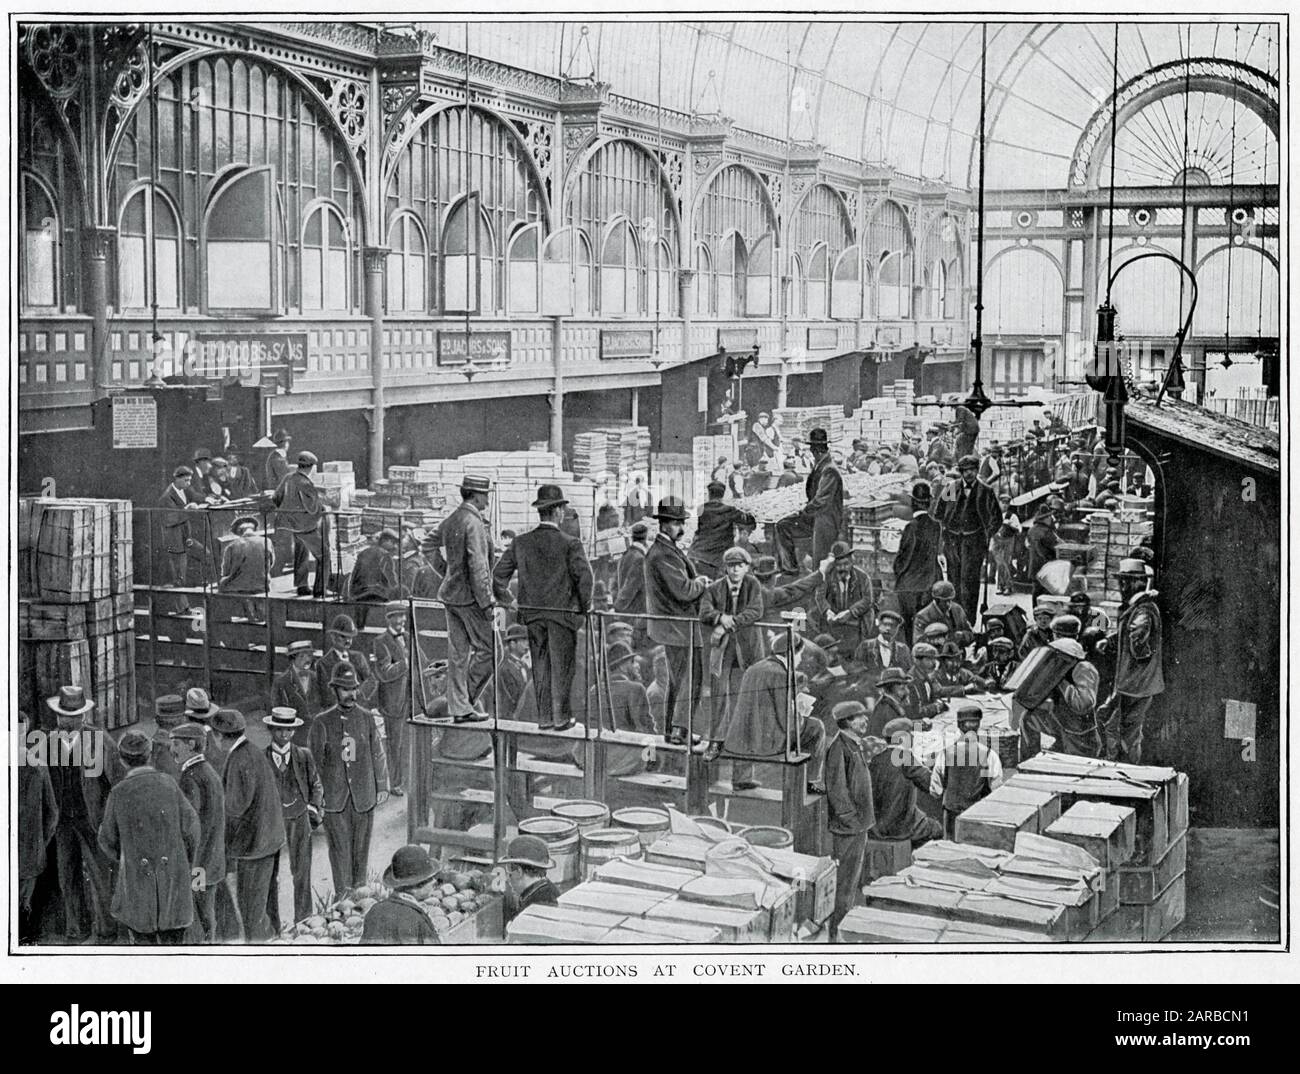 Subastas de frutas en Covent Garden 1900 Foto de stock